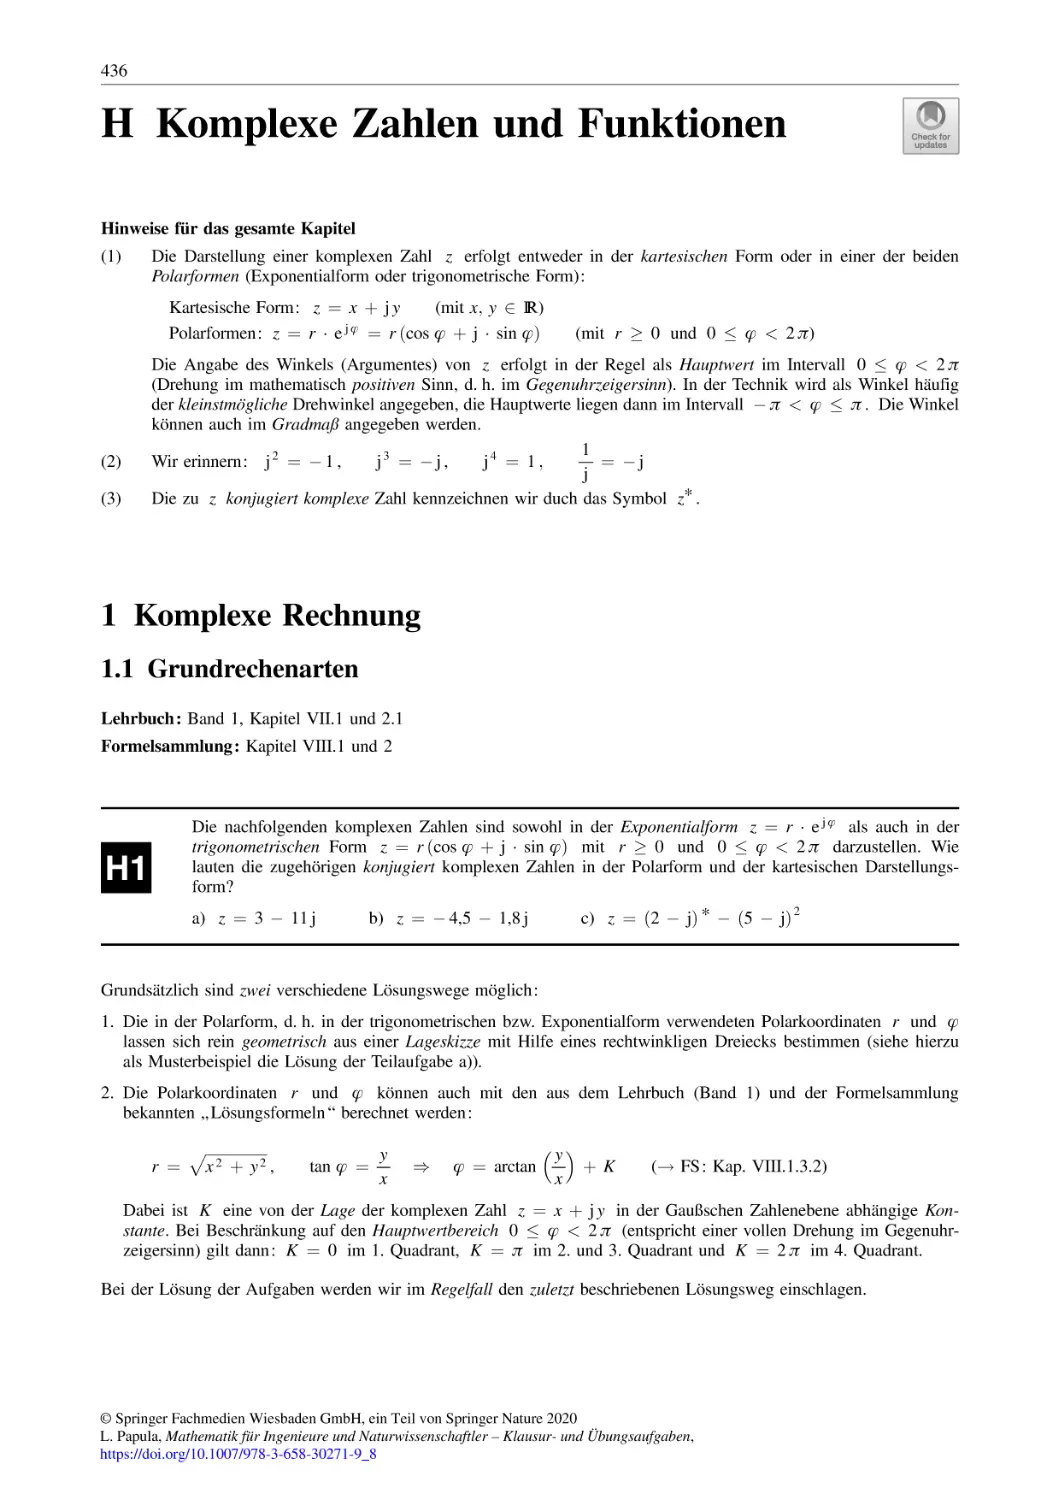 H Komplexe Zahlen und Funktionen
1 Komplexe Rechnung
1.1 Grundrechenarten